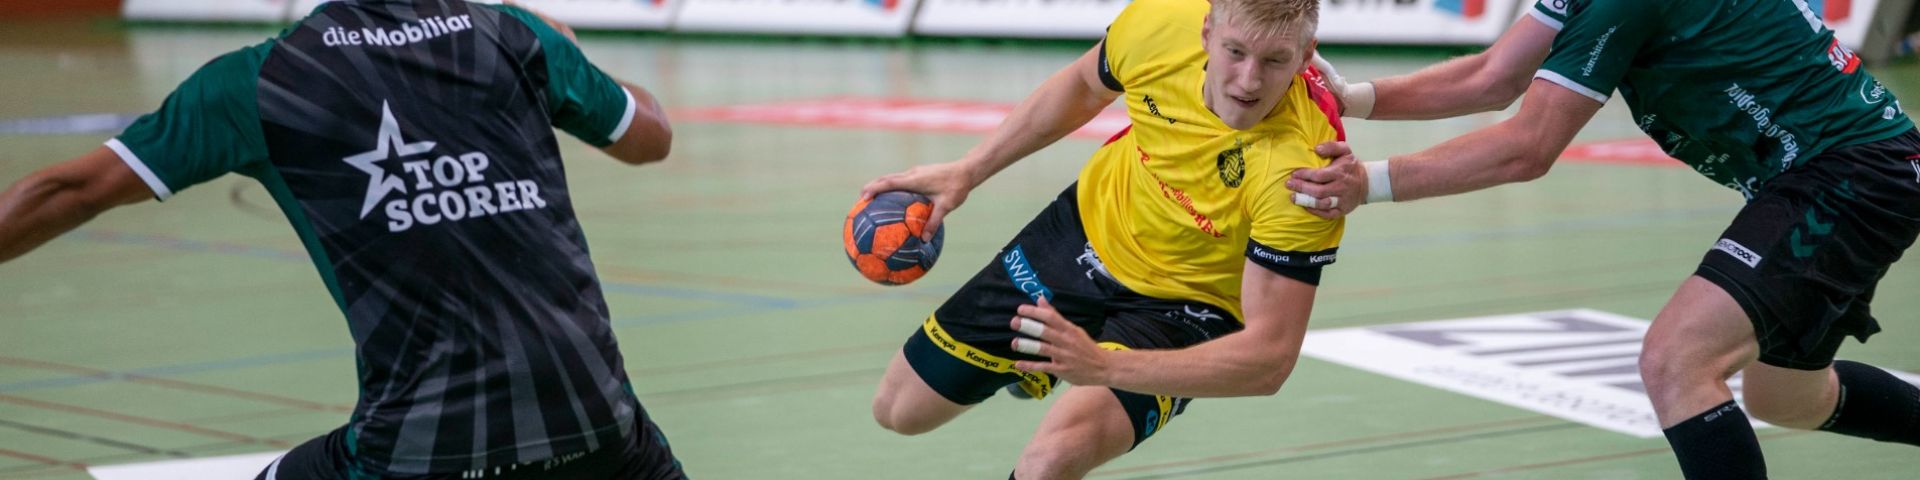 Quickline Handball League - Whatsupp 6: im Fokus Beni Geisser, der Besuch von Julian Graf in der Sporthalle Kreuzbleiche und "player of the month" Ariel Pietrasik